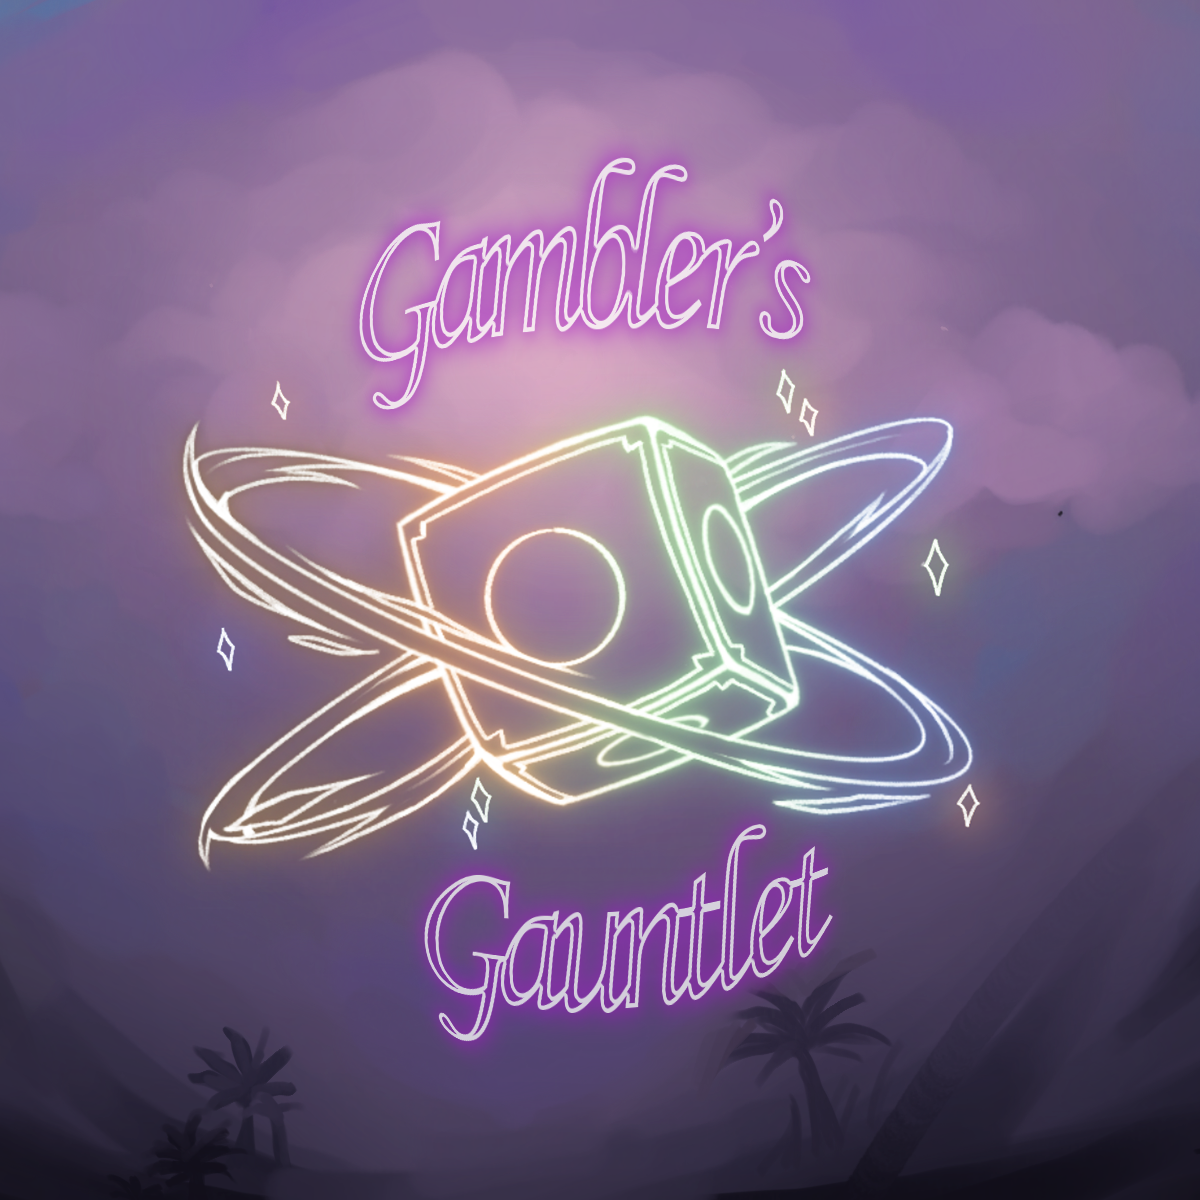 Gambler's Gauntlet